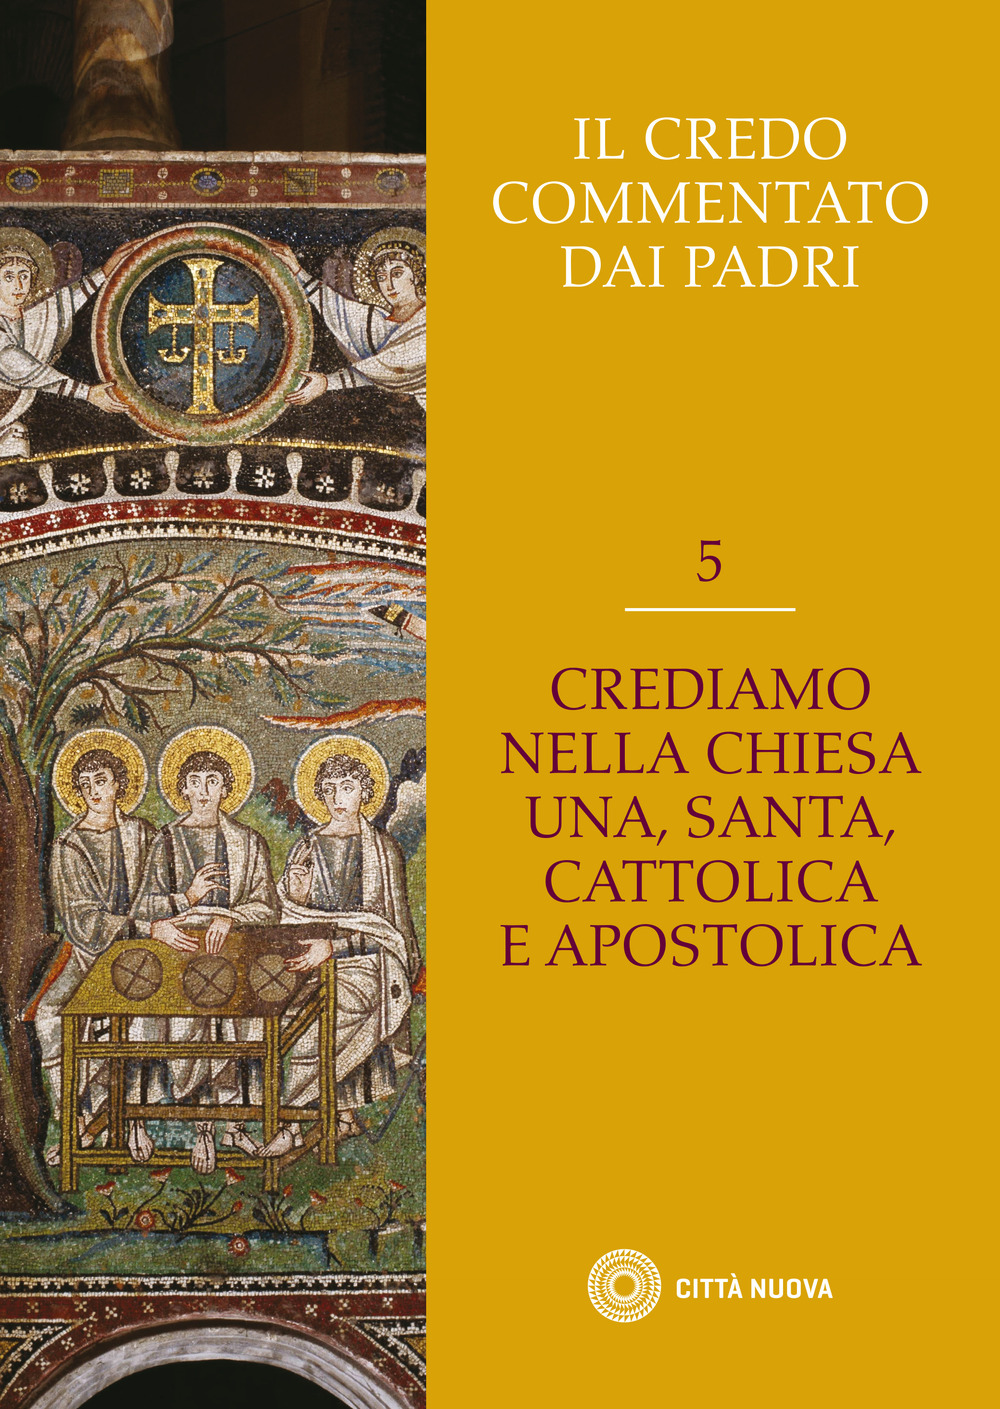 Il Credo commentato dai Padri. Vol. 5: Crediamo nella Chiesa una santa cattolica e apostolica